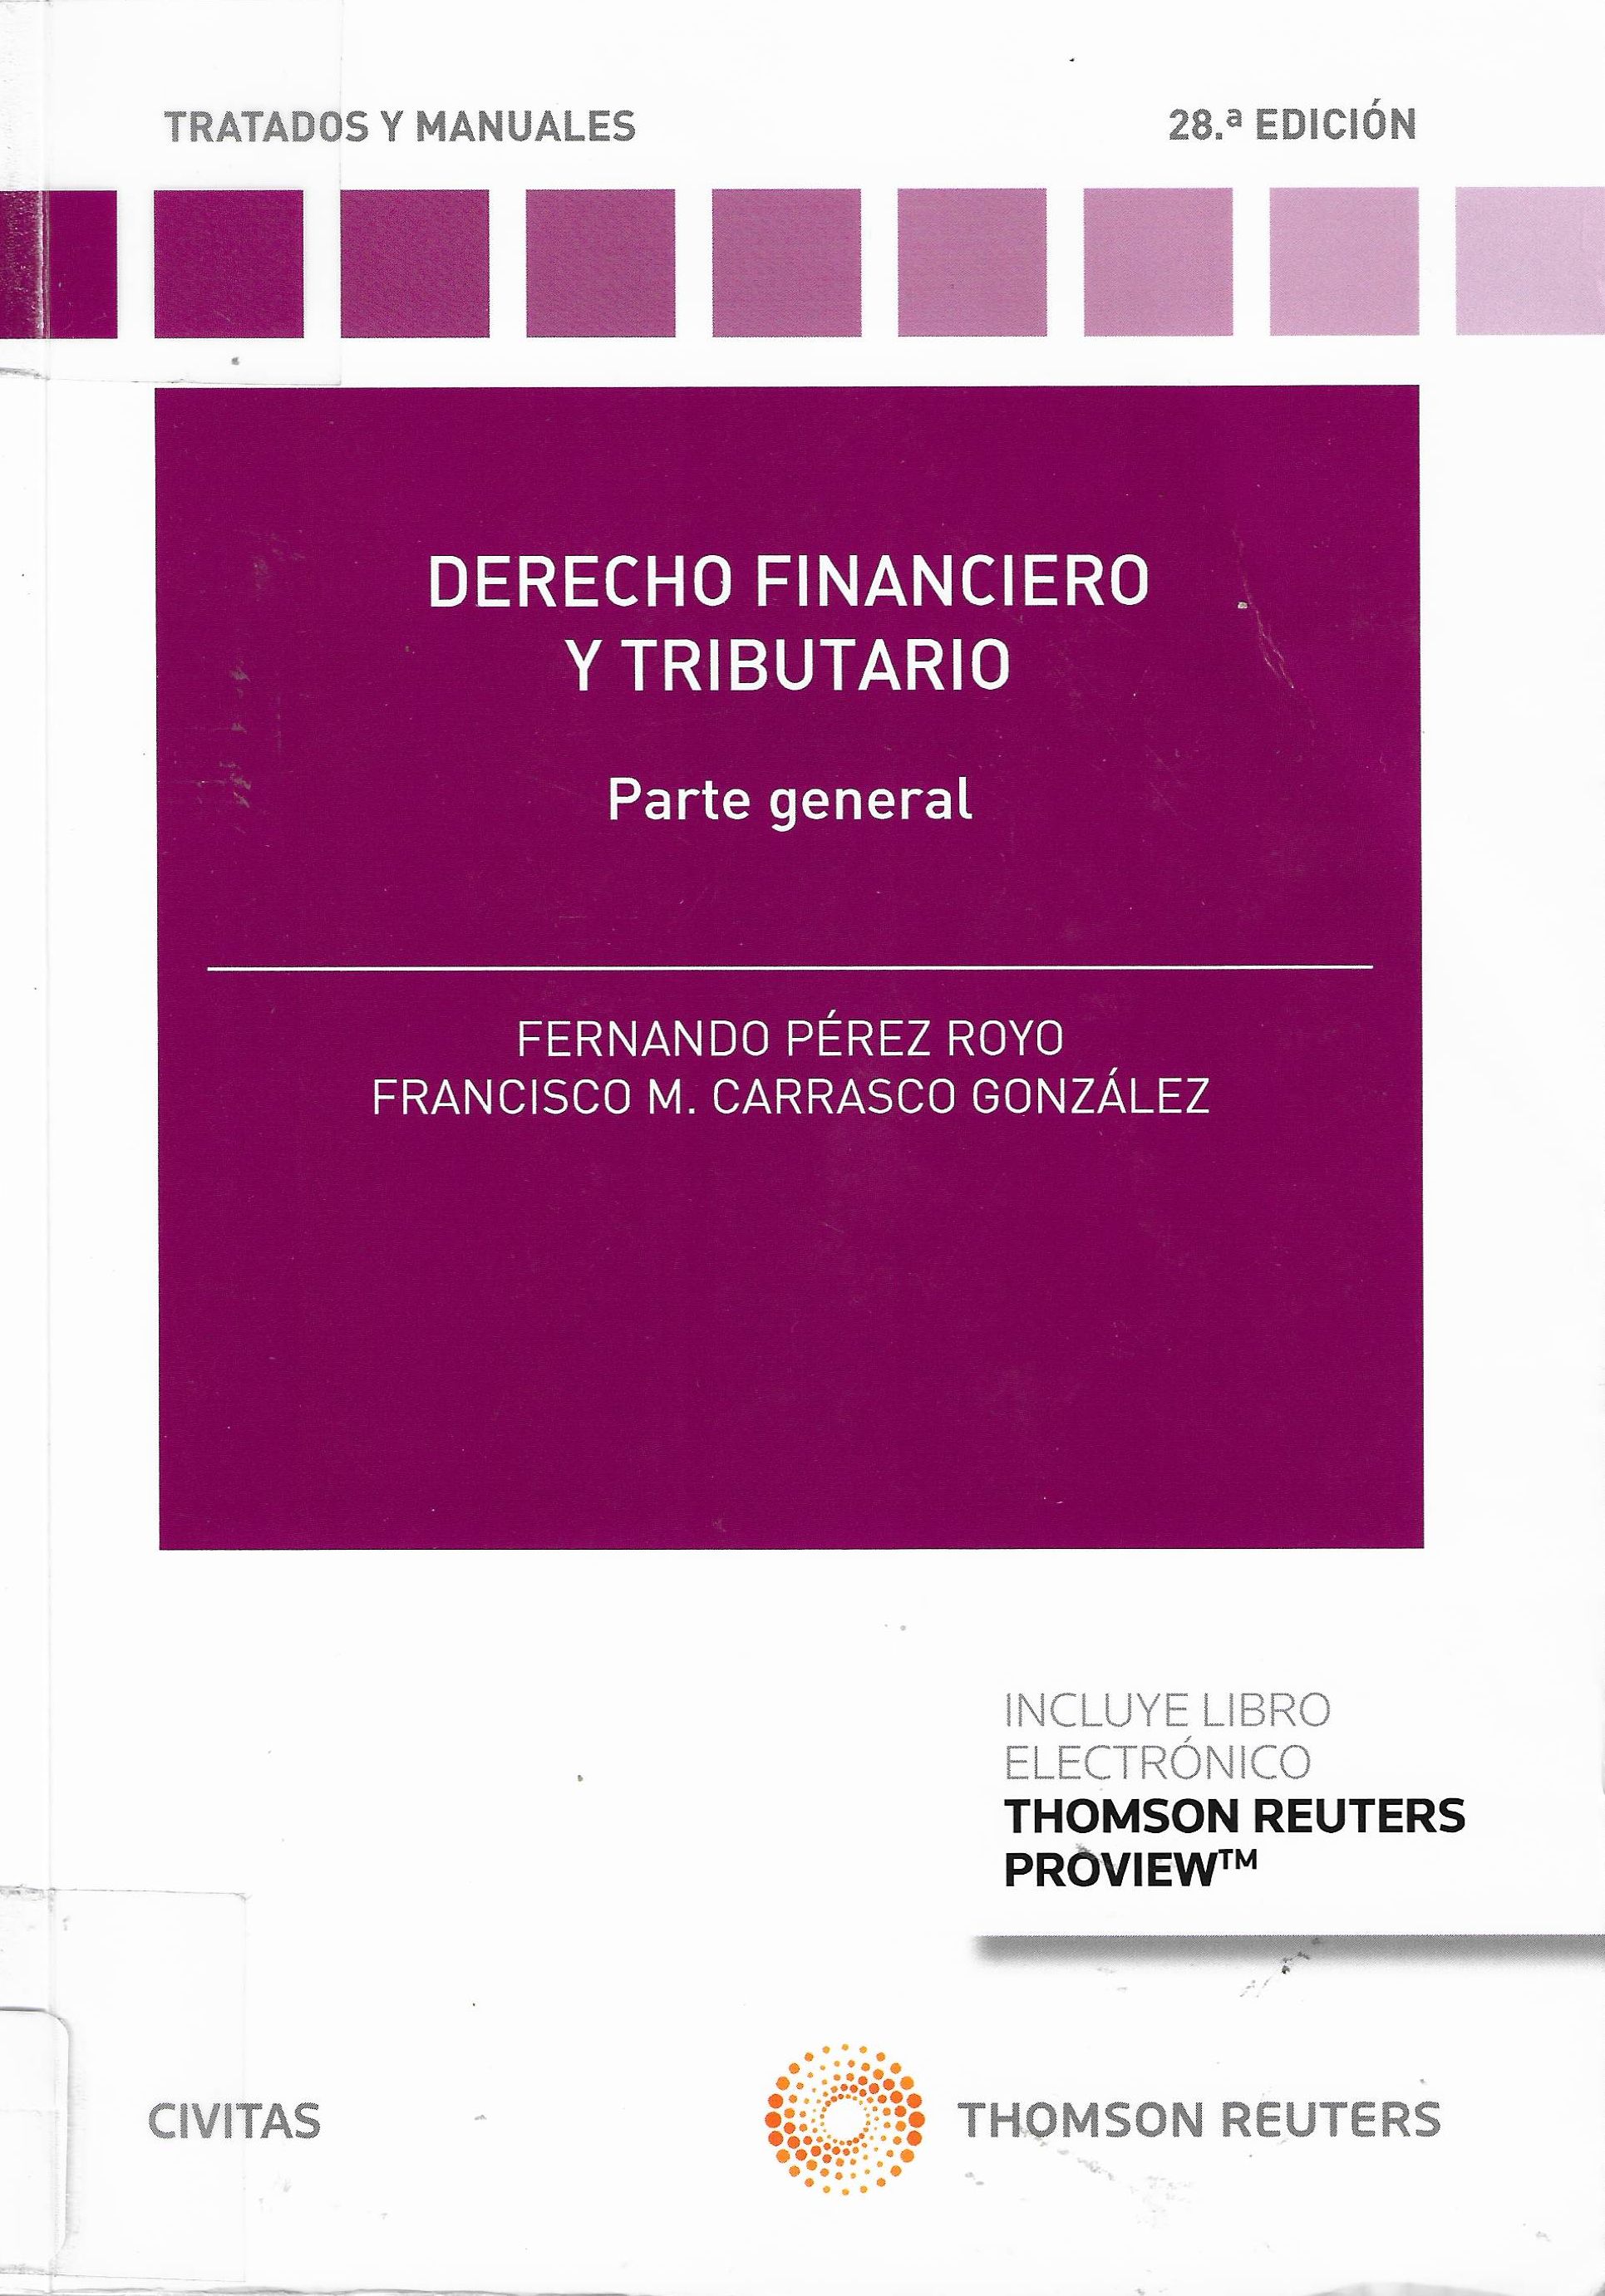 Imagen de portada del libro Derecho financiero y tributario